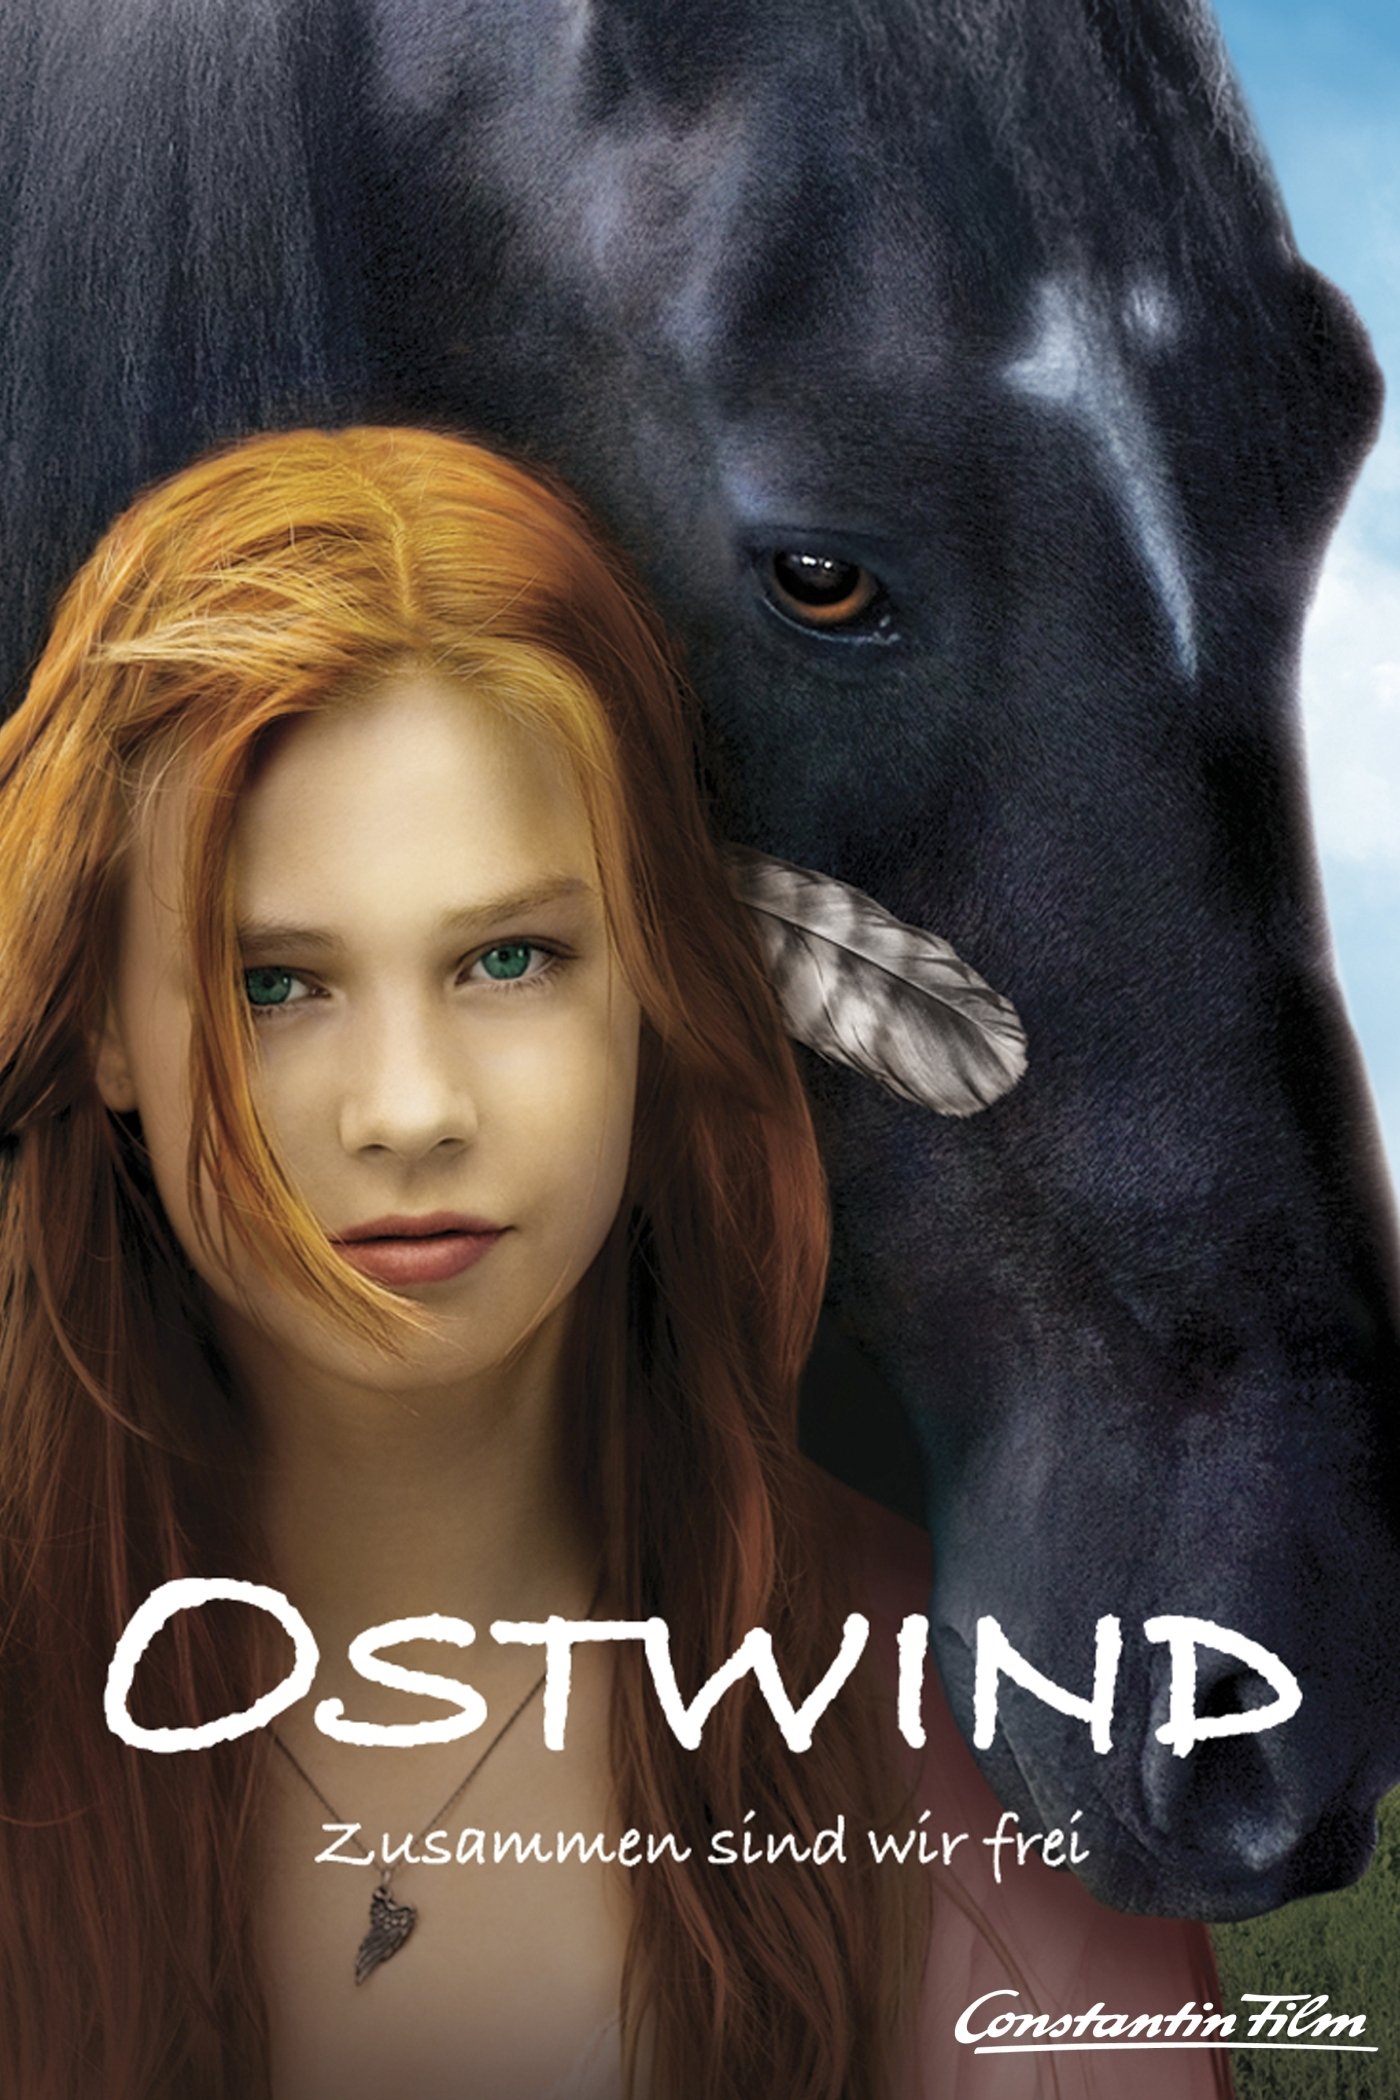 Plakat von "Ostwind"